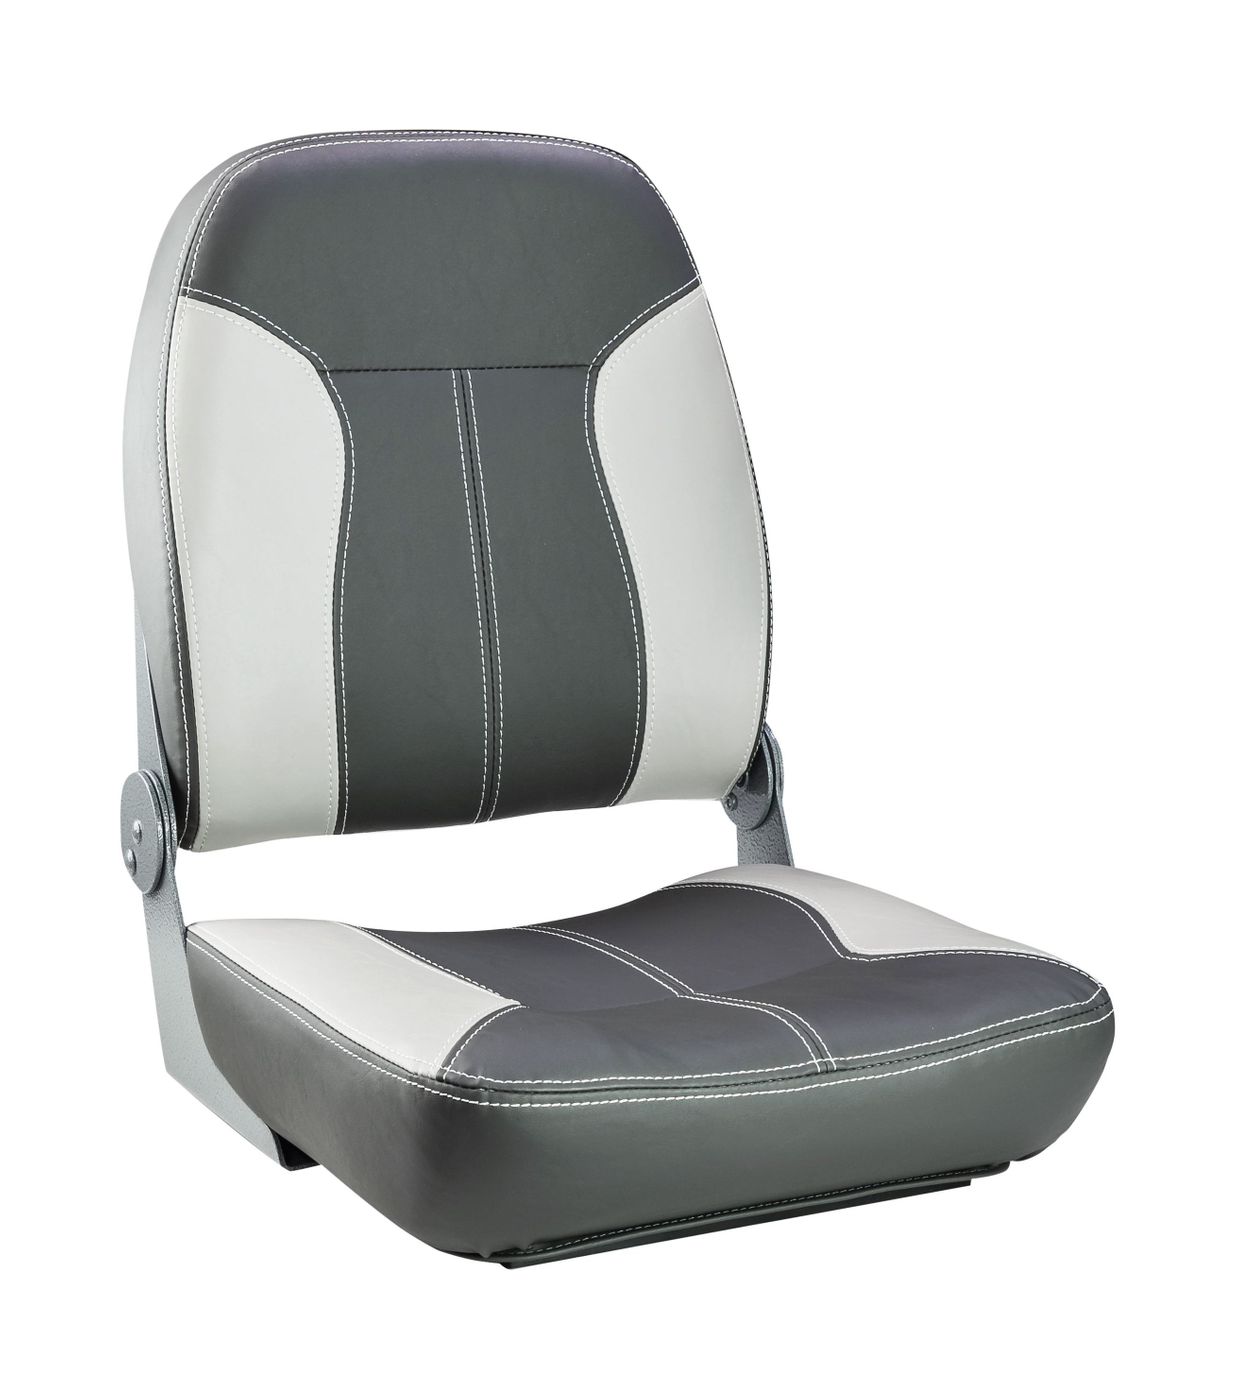 Кресло складное мягкое SPORT с высокой спинкой, серый/темно-серый 1040543 кресло skipper premium с высокой спинкой серый темно серый 1061067